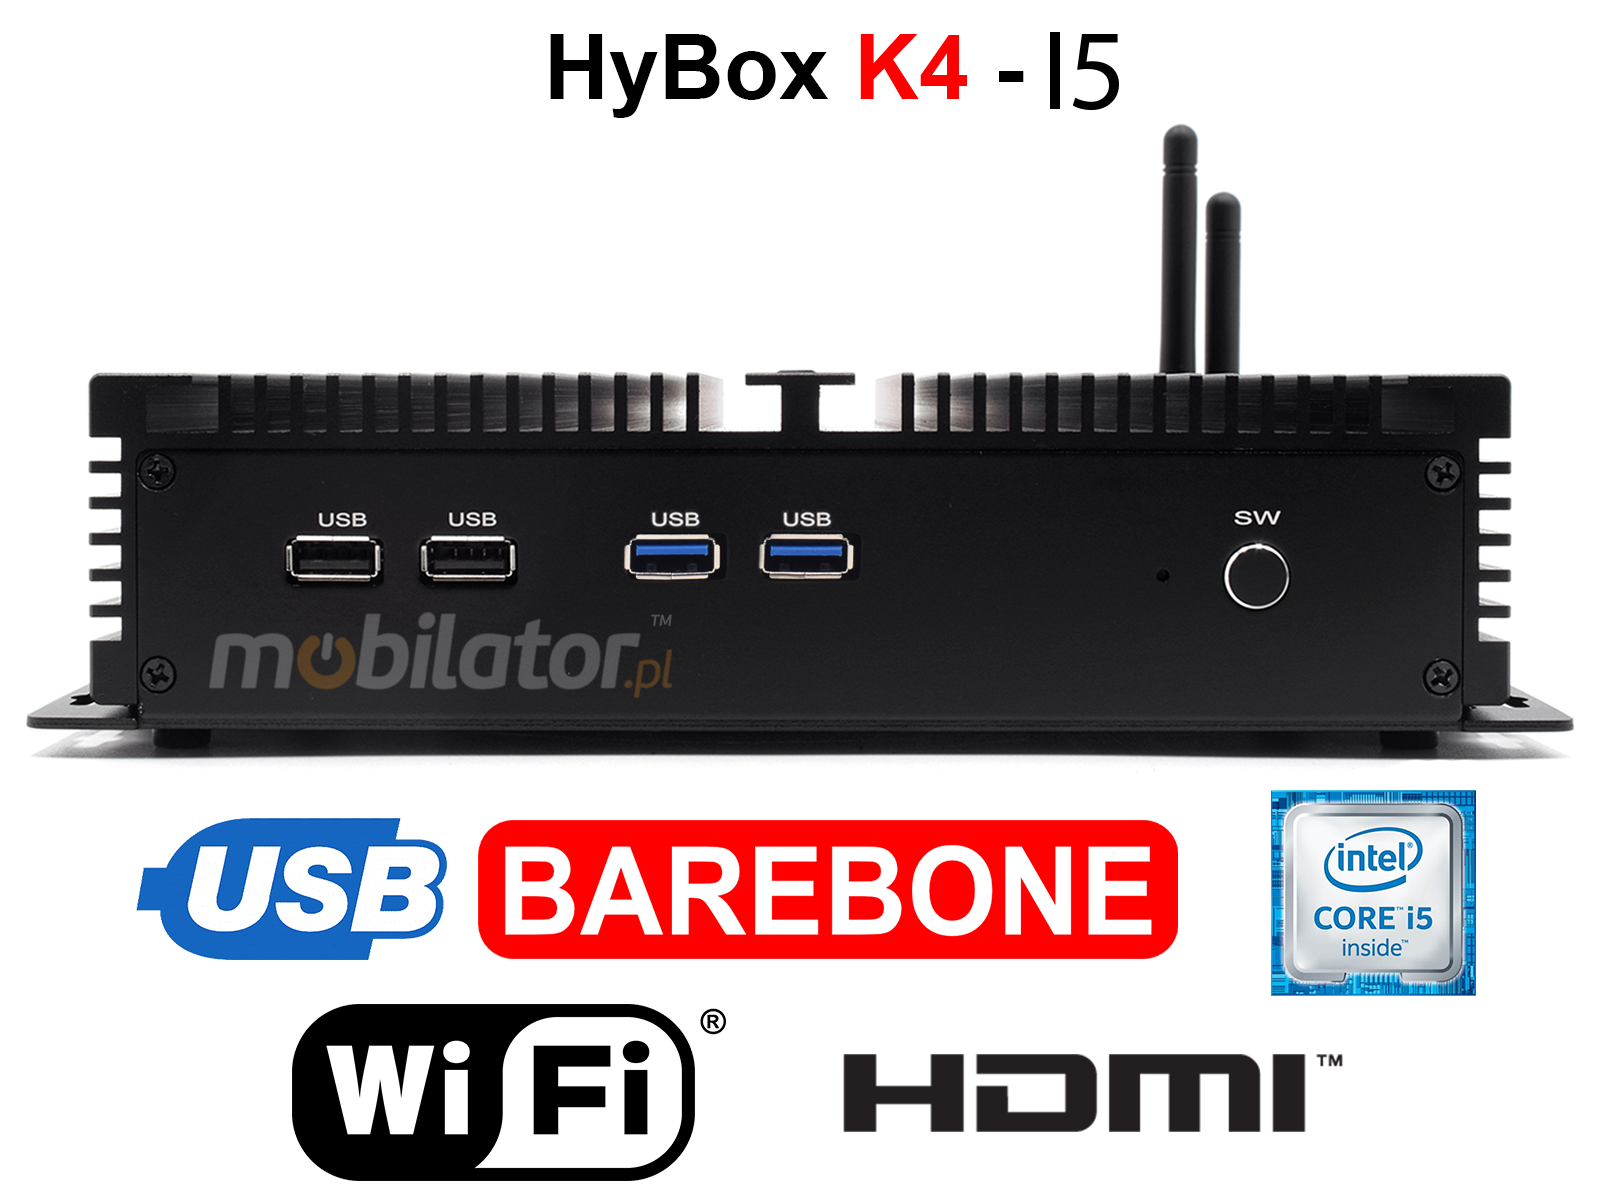 HyBOX K4 may niezawodny szybki i wydajny mini pc w metalowej obudowie przystosowany do pracy na hurtowni